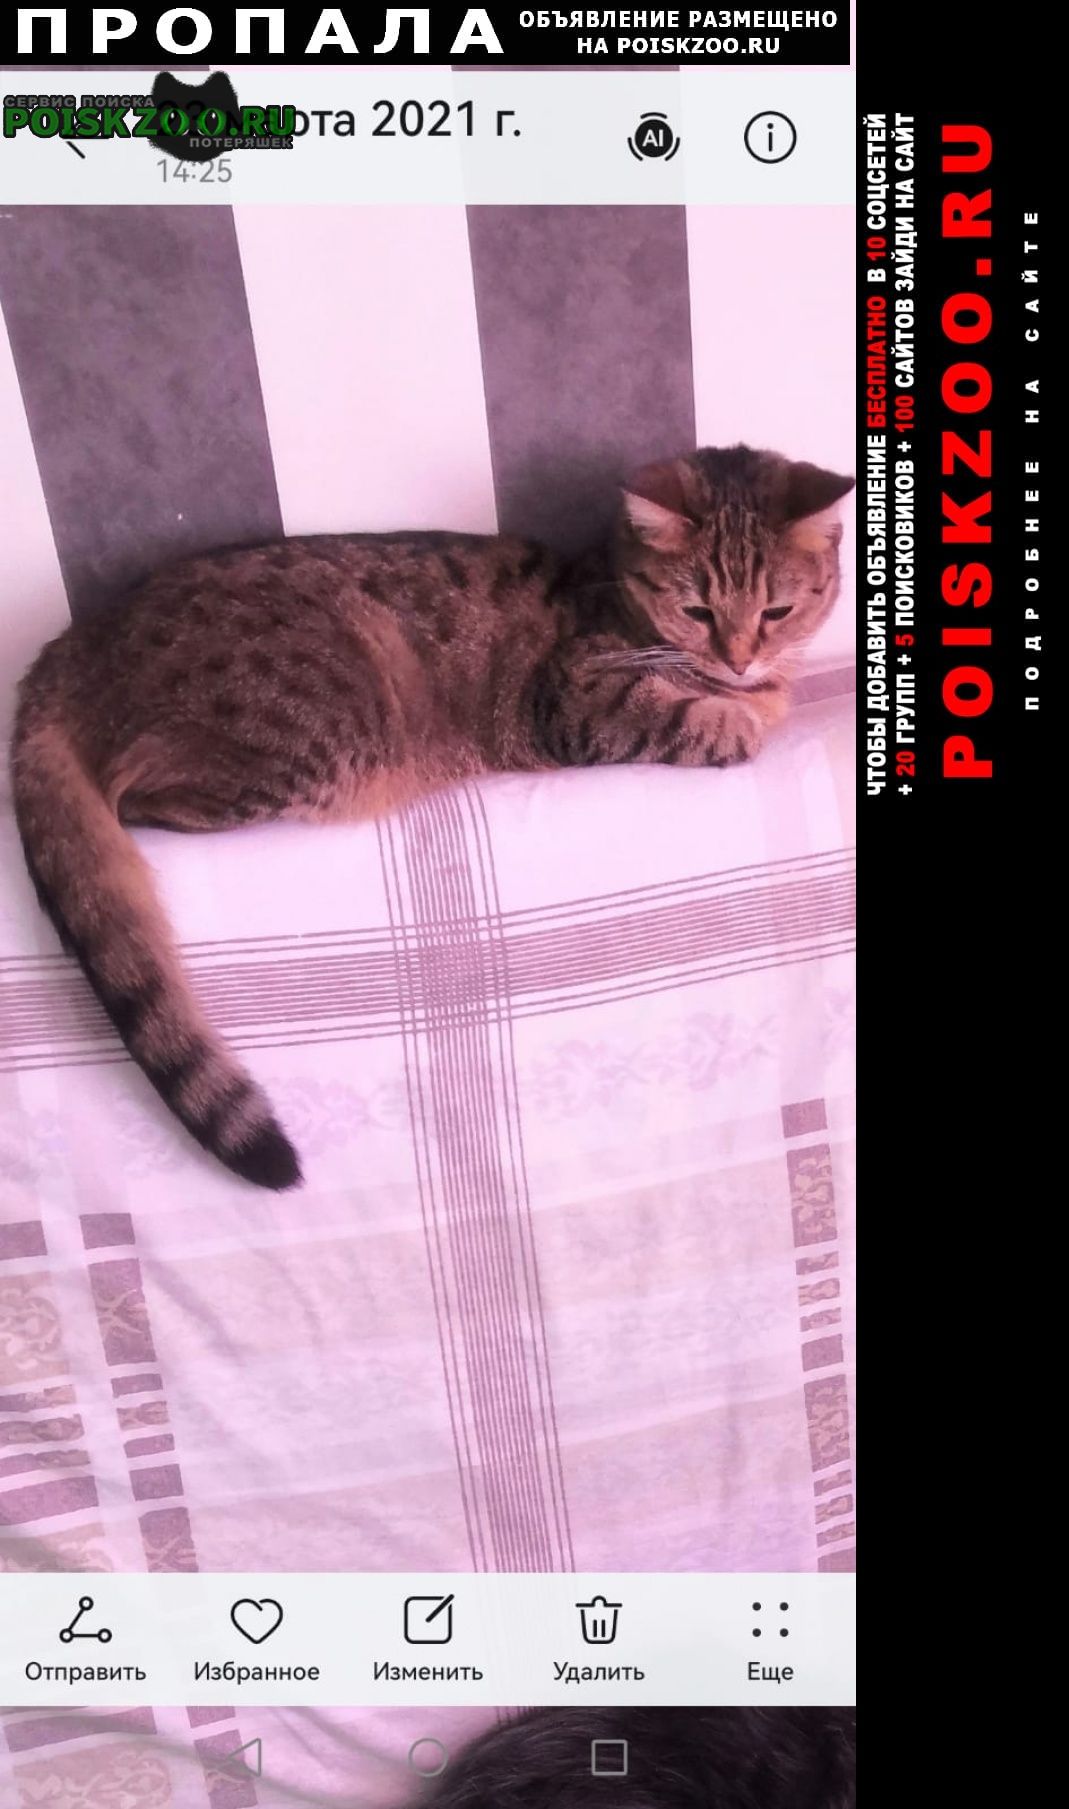 Пропала кошка 417 дом Стрежевой